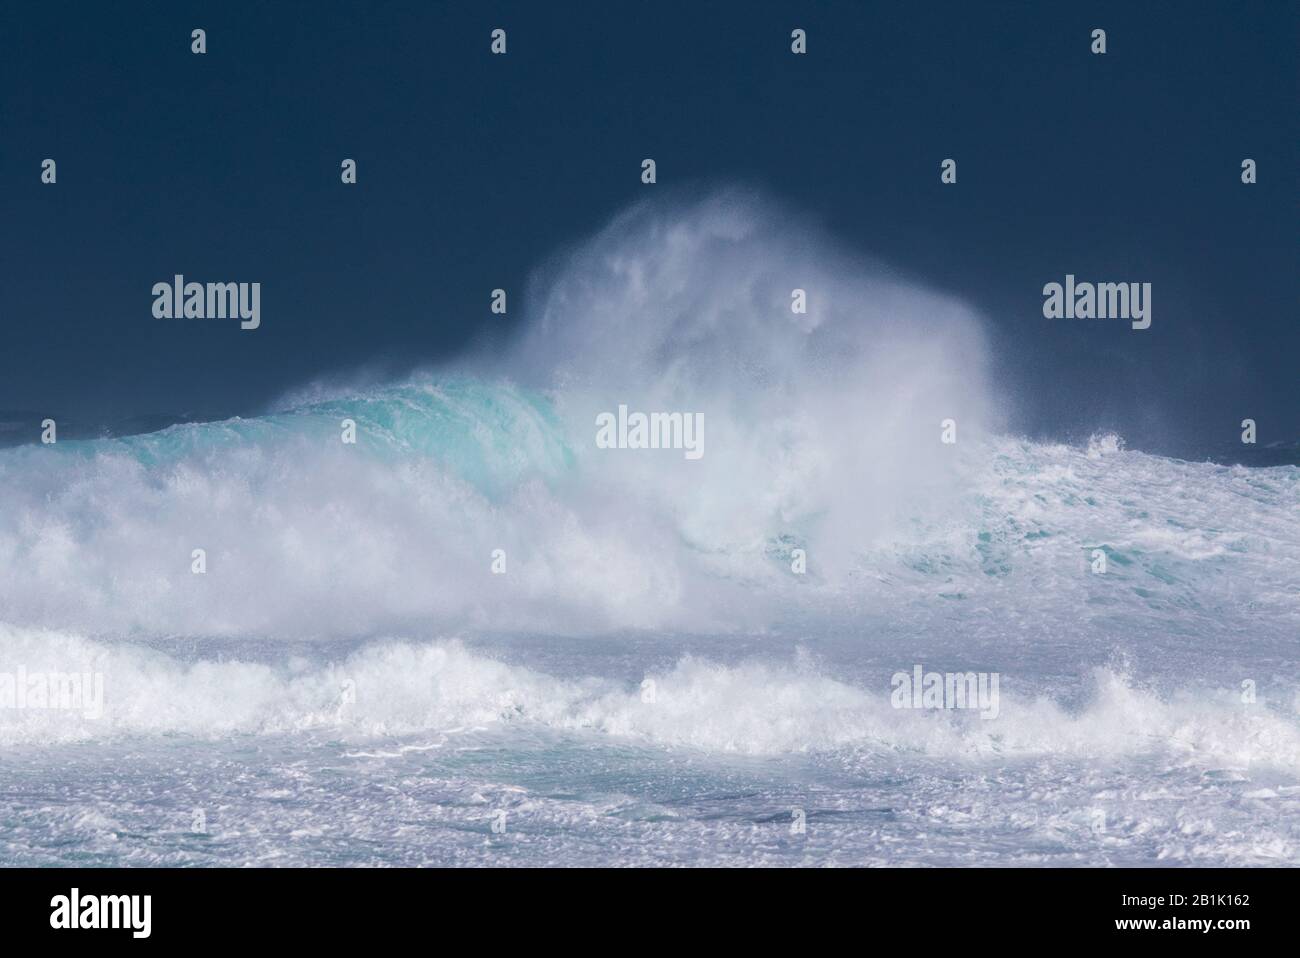 Stormy seas at Birsay, Orkney Isles Stock Photo